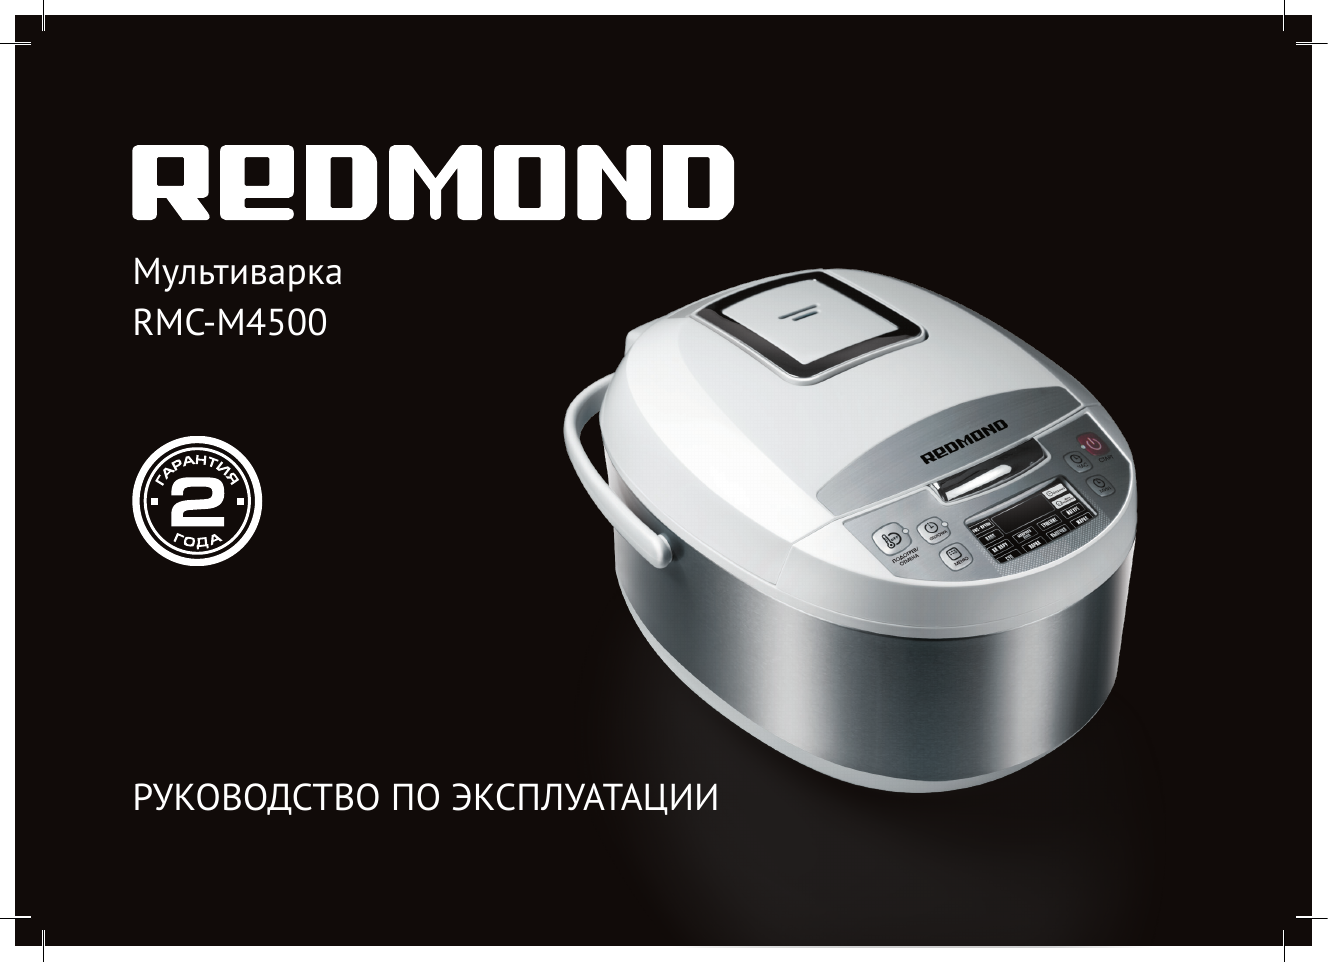 Рецепт теста для редмонд. Мультиварка Redmond RMC-m4500. RMC-4500. Мультиварка редмонд 4500. Redmond RMC-1915 отложенный старт.